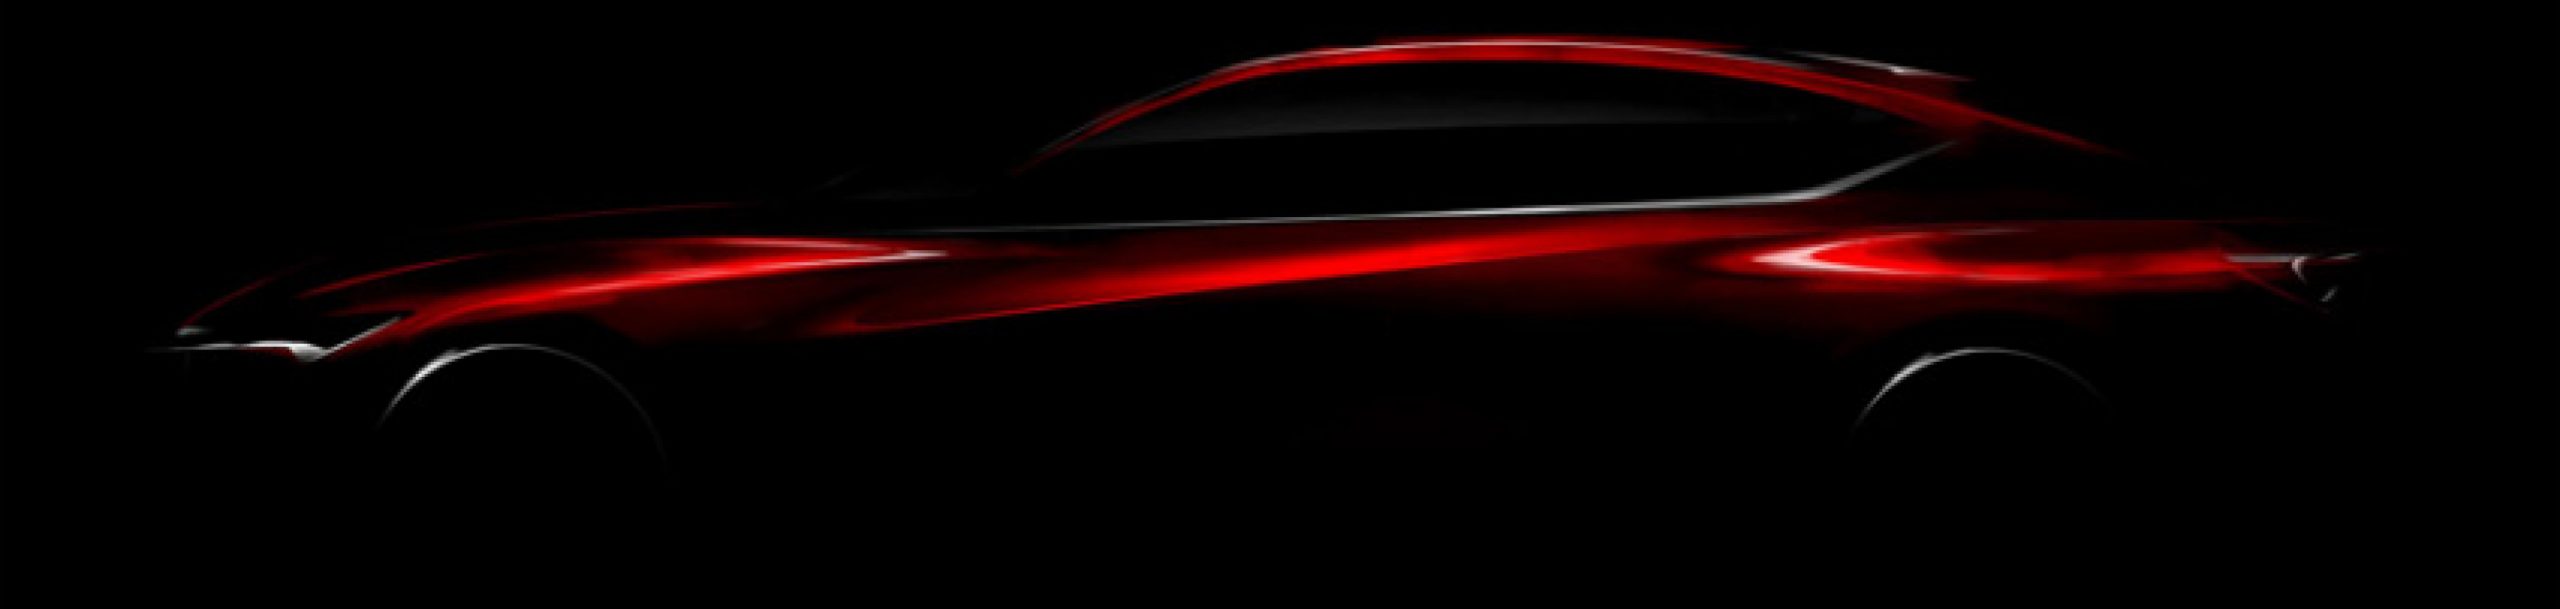 acura, autos, cars, acura announces details for 2016 precision concept